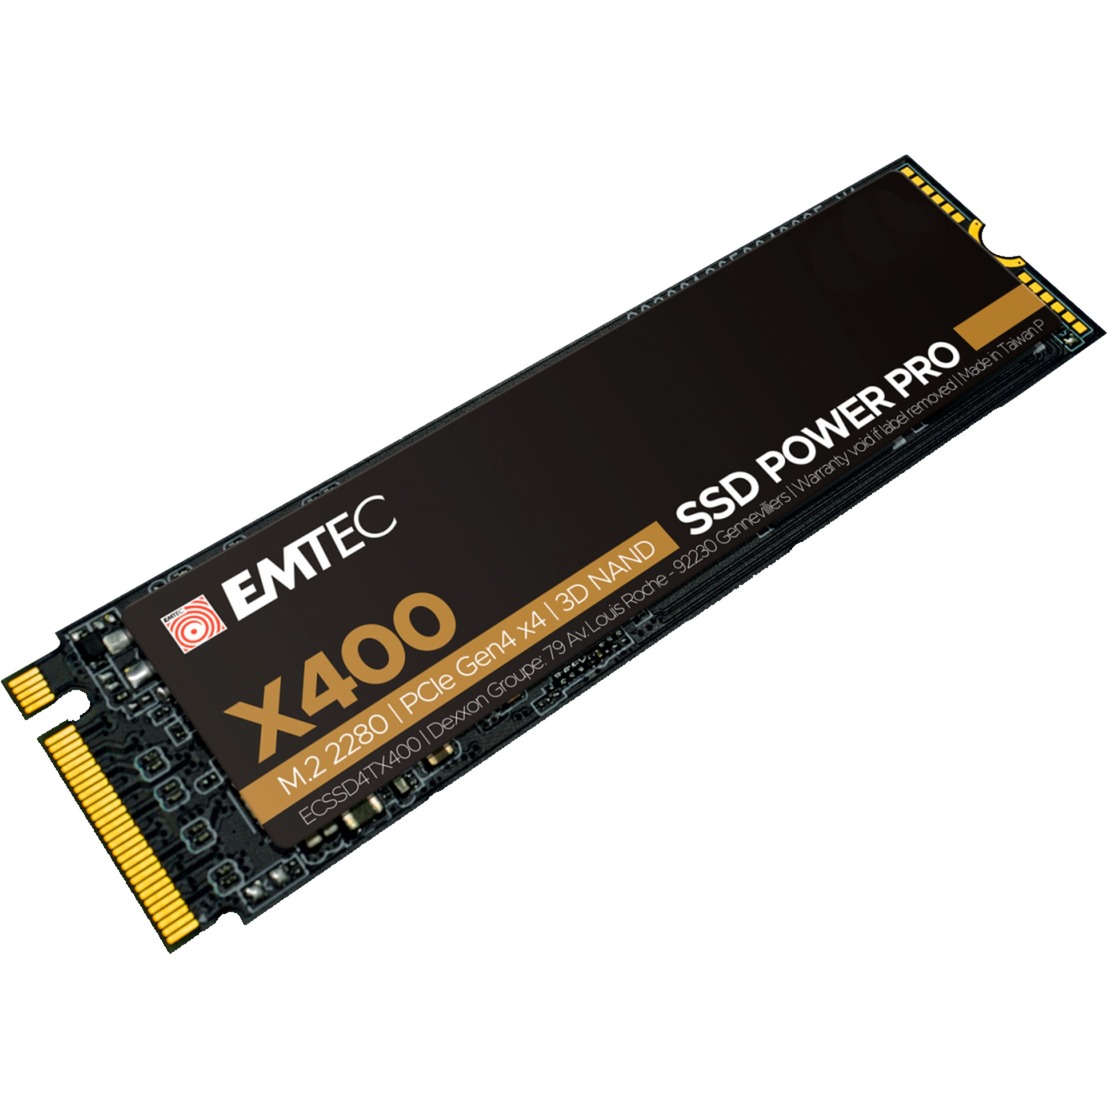 Image of Alternate - X400 SSD Power Pro 500 GB online einkaufen bei Alternate